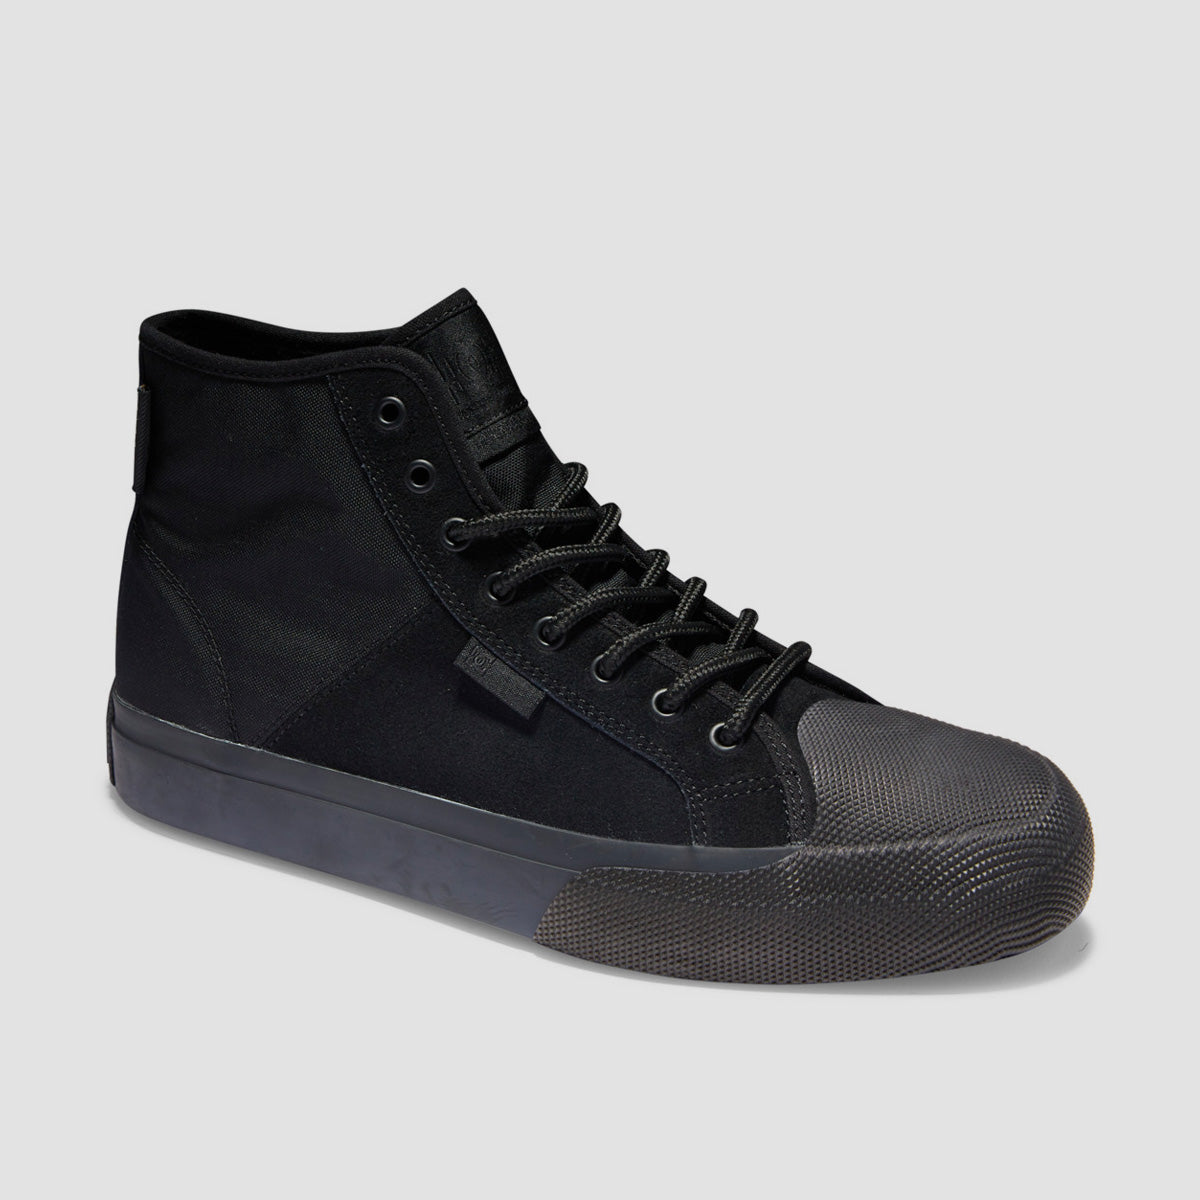 DC Manual Hi WNT Shoes - Black/Black/Black